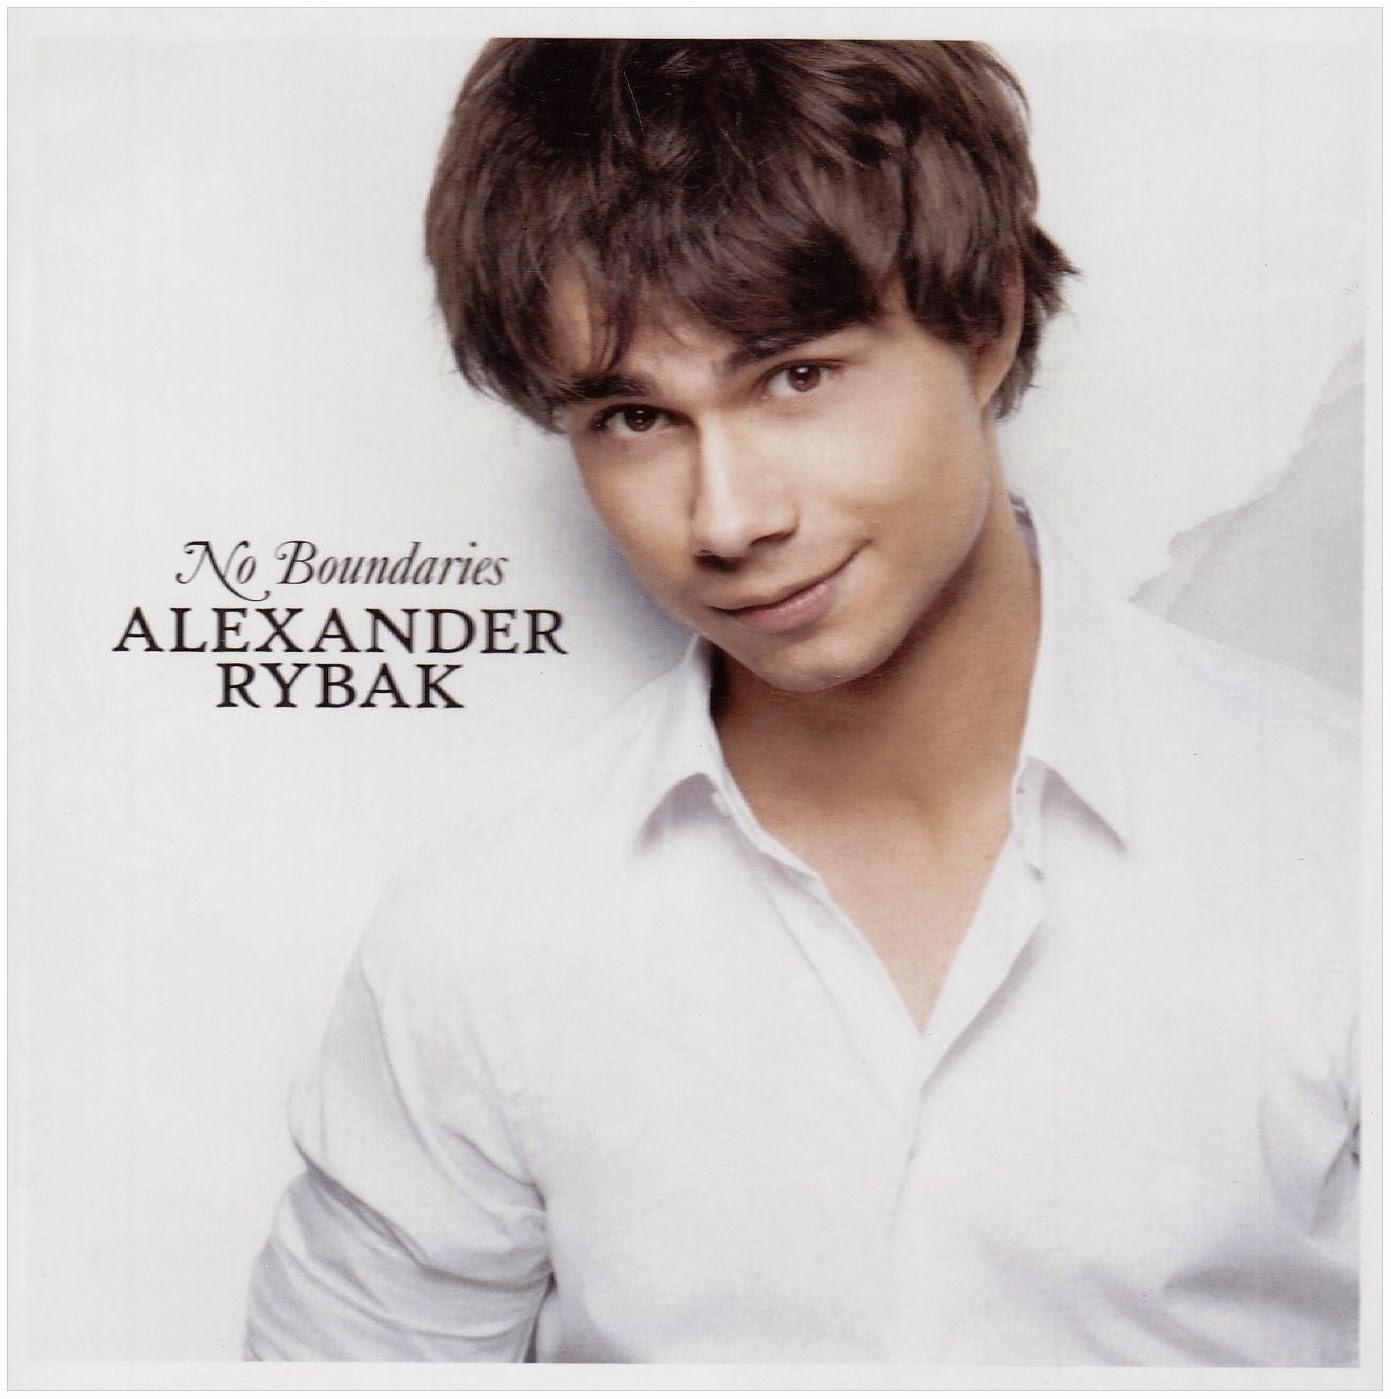 Alexander Rybak HD Wallpaper. Celebrities Hot Wallpaper